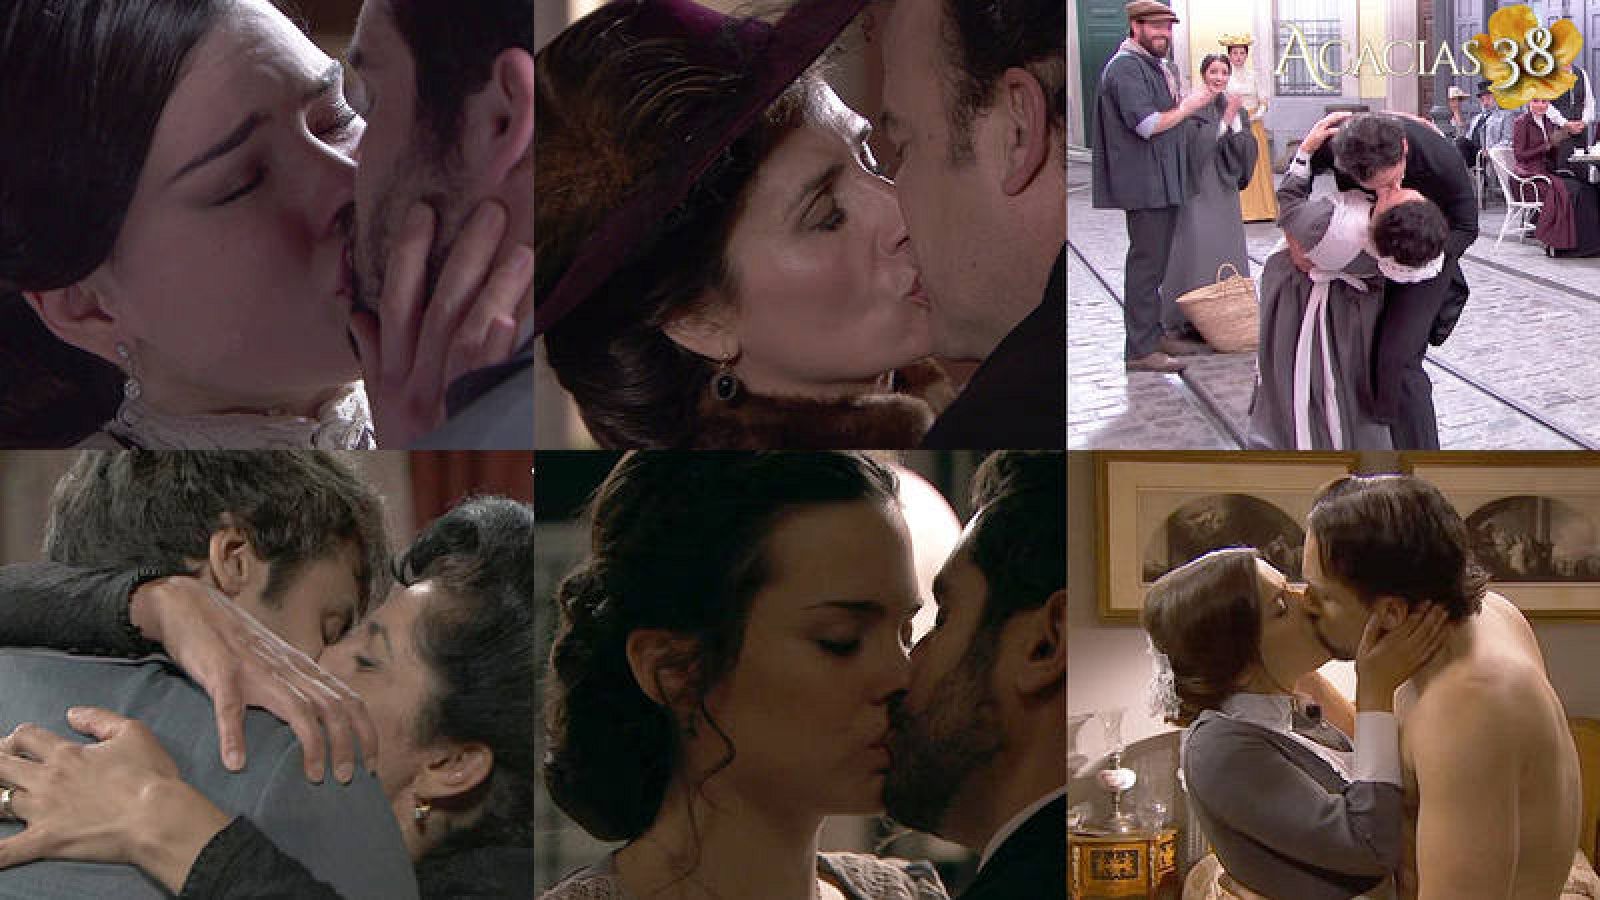  Celebramos el Día Internacional del beso eligiendo los mejores de 'Acacias 38'